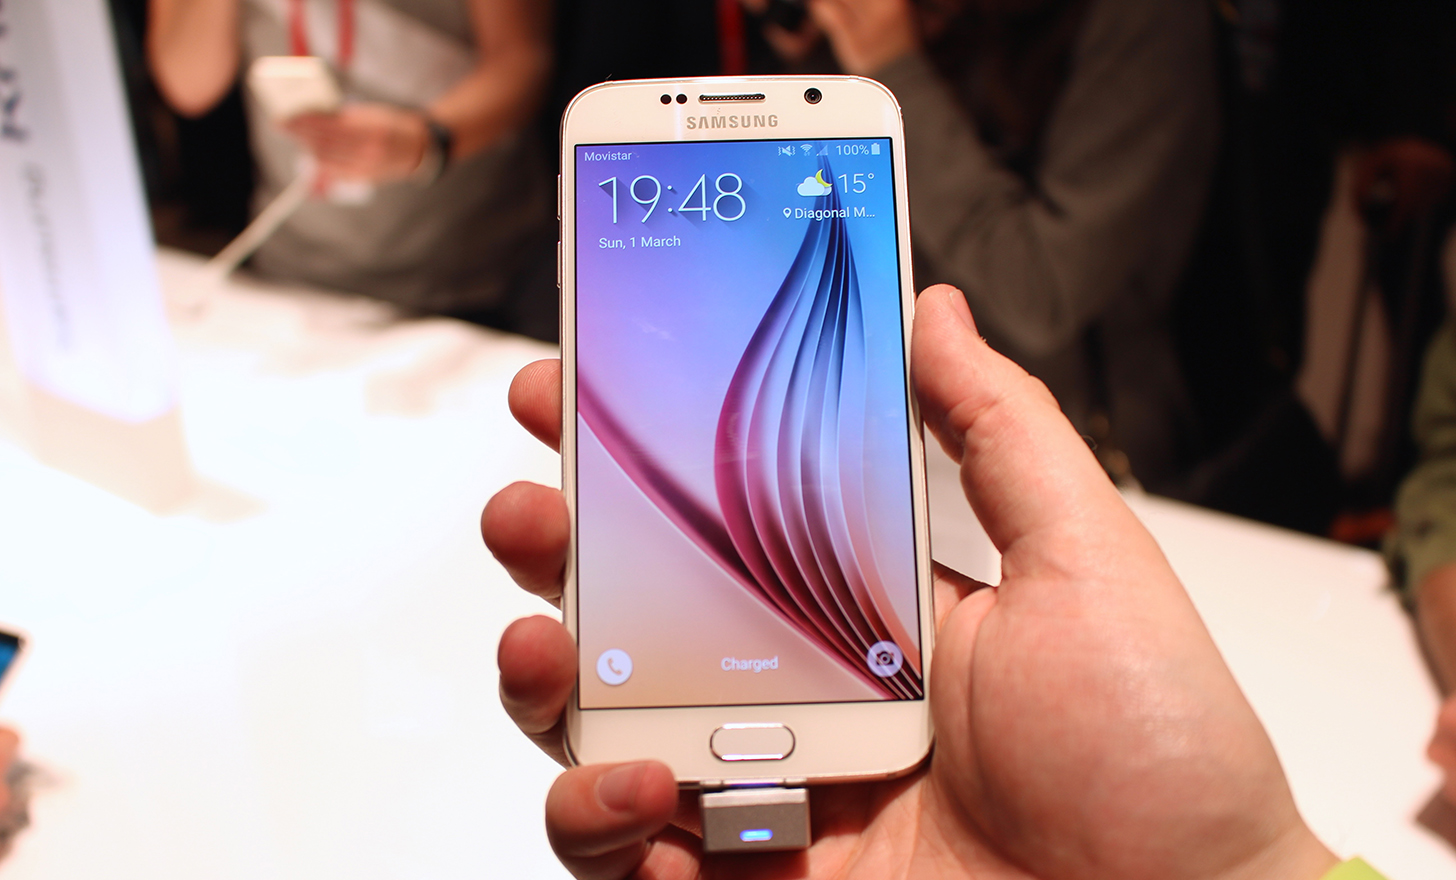 Samsung Galaxy S6 Lite